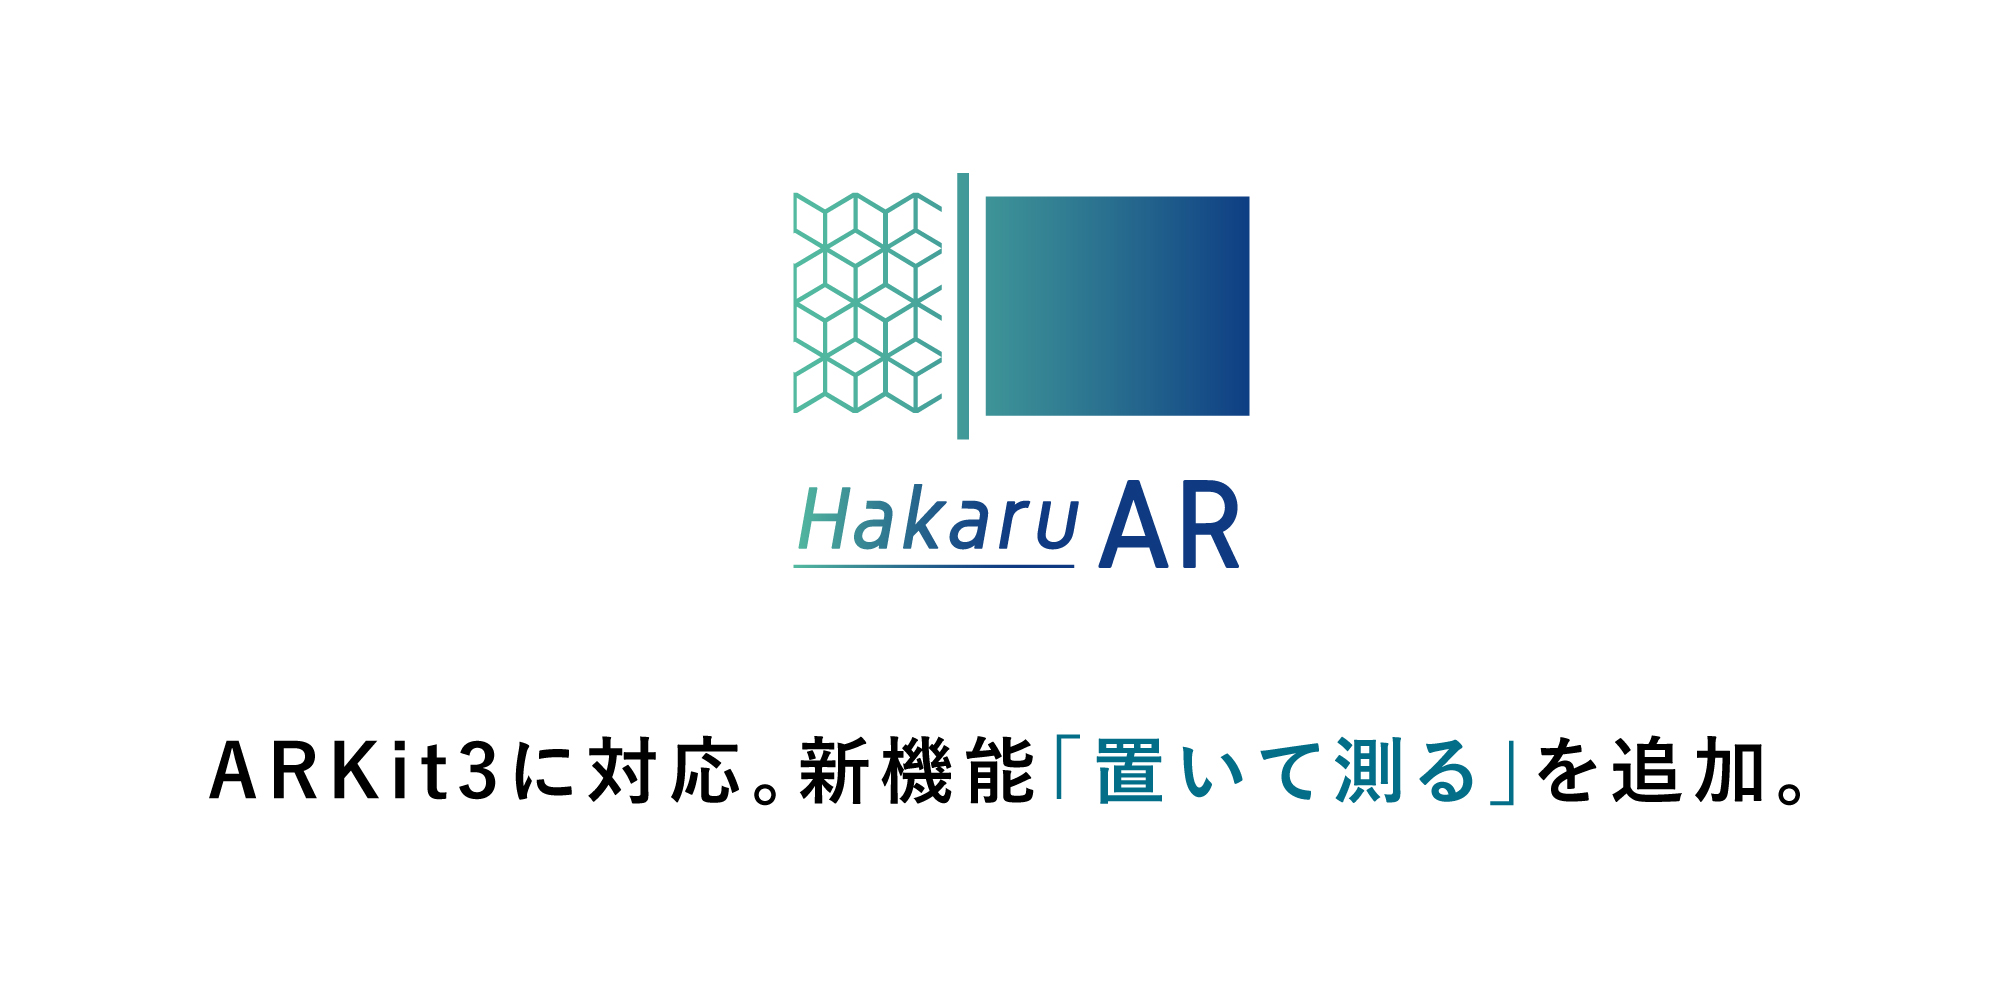 誰でも手軽に測れるiPhoneアプリ「HakaruAR（測るエーアール）」をアップデート。ARKit3に対応し、新機能「置いて測る」を追加！